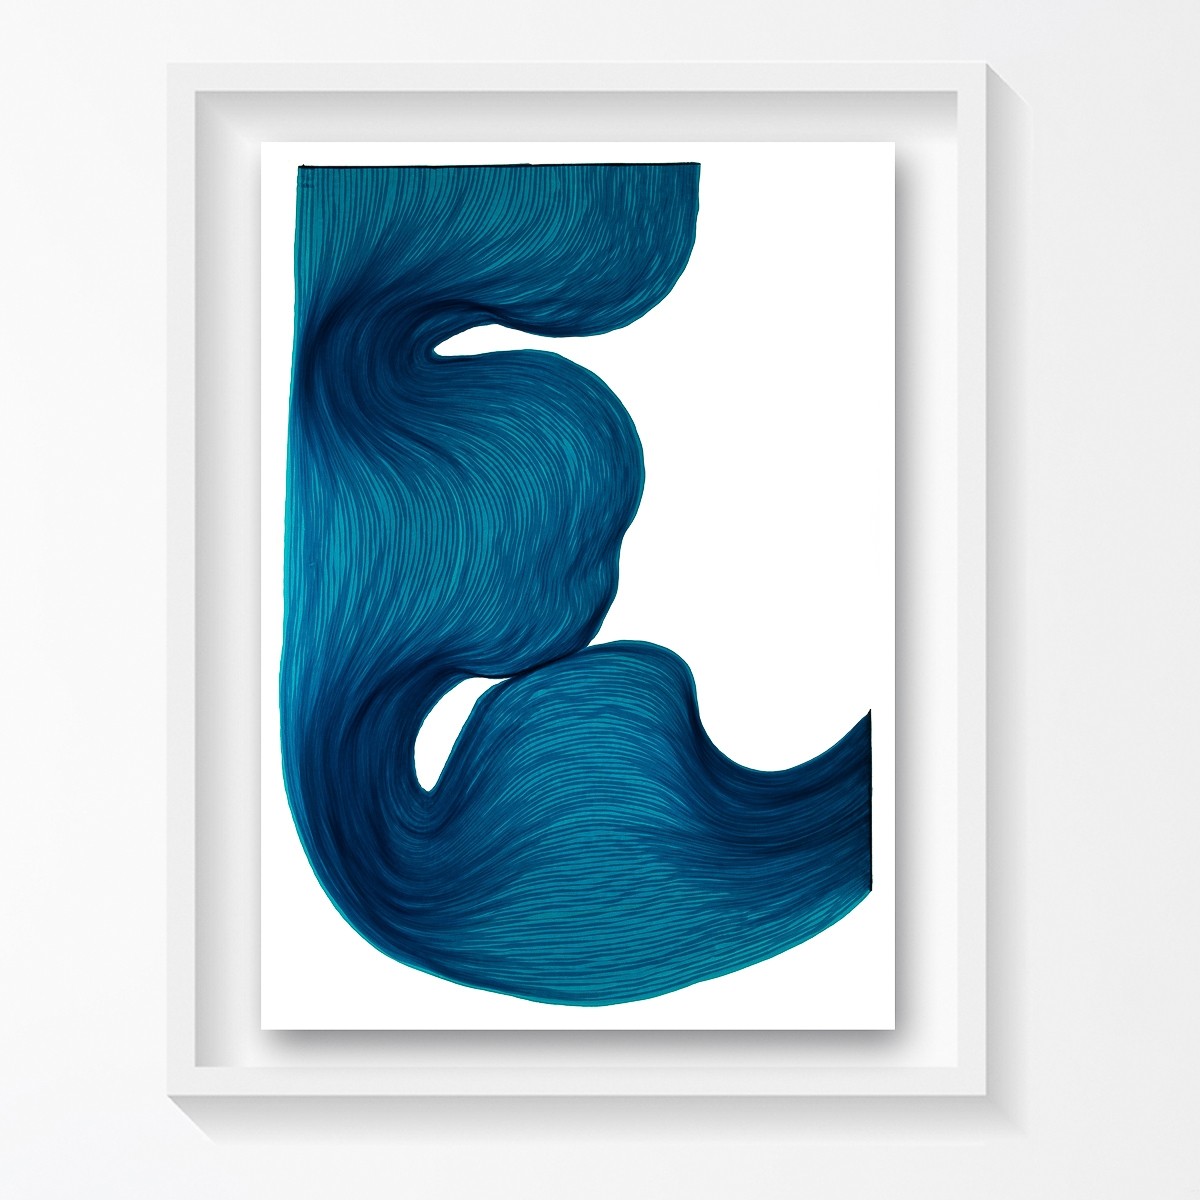 Rich Blue | Lali Torma | Zeichnung | Kalligraphietusche auf Papier, gerahmt